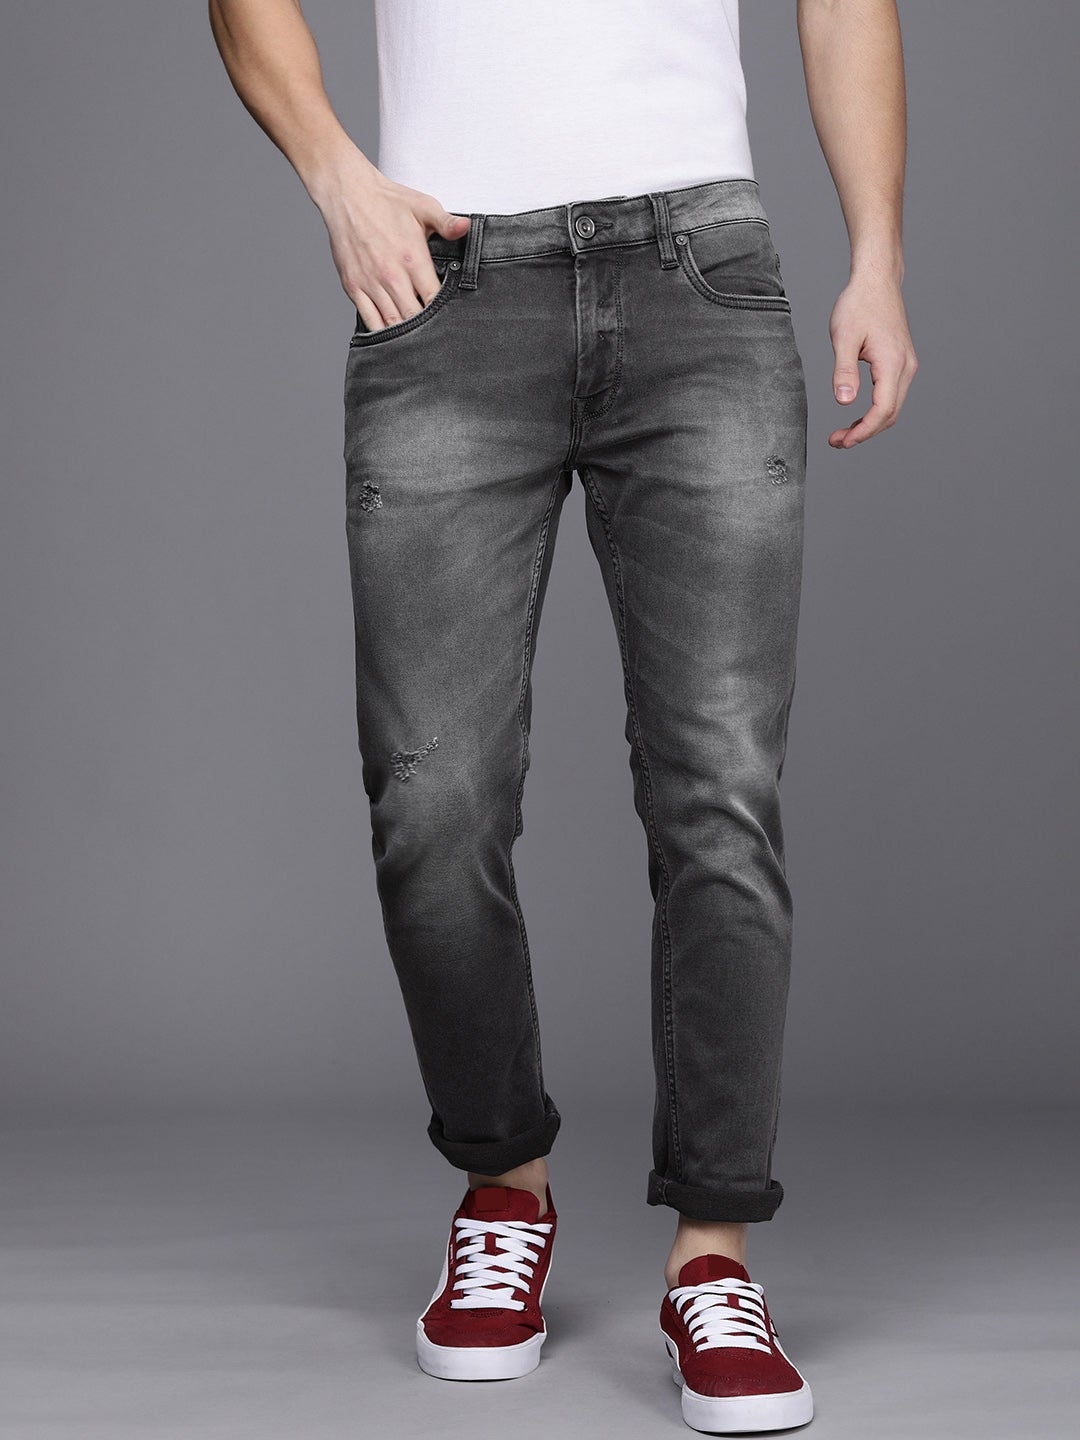 VOI JEANS | Men's Grey track Skinny Stretchable Jeans (VOJN1641)